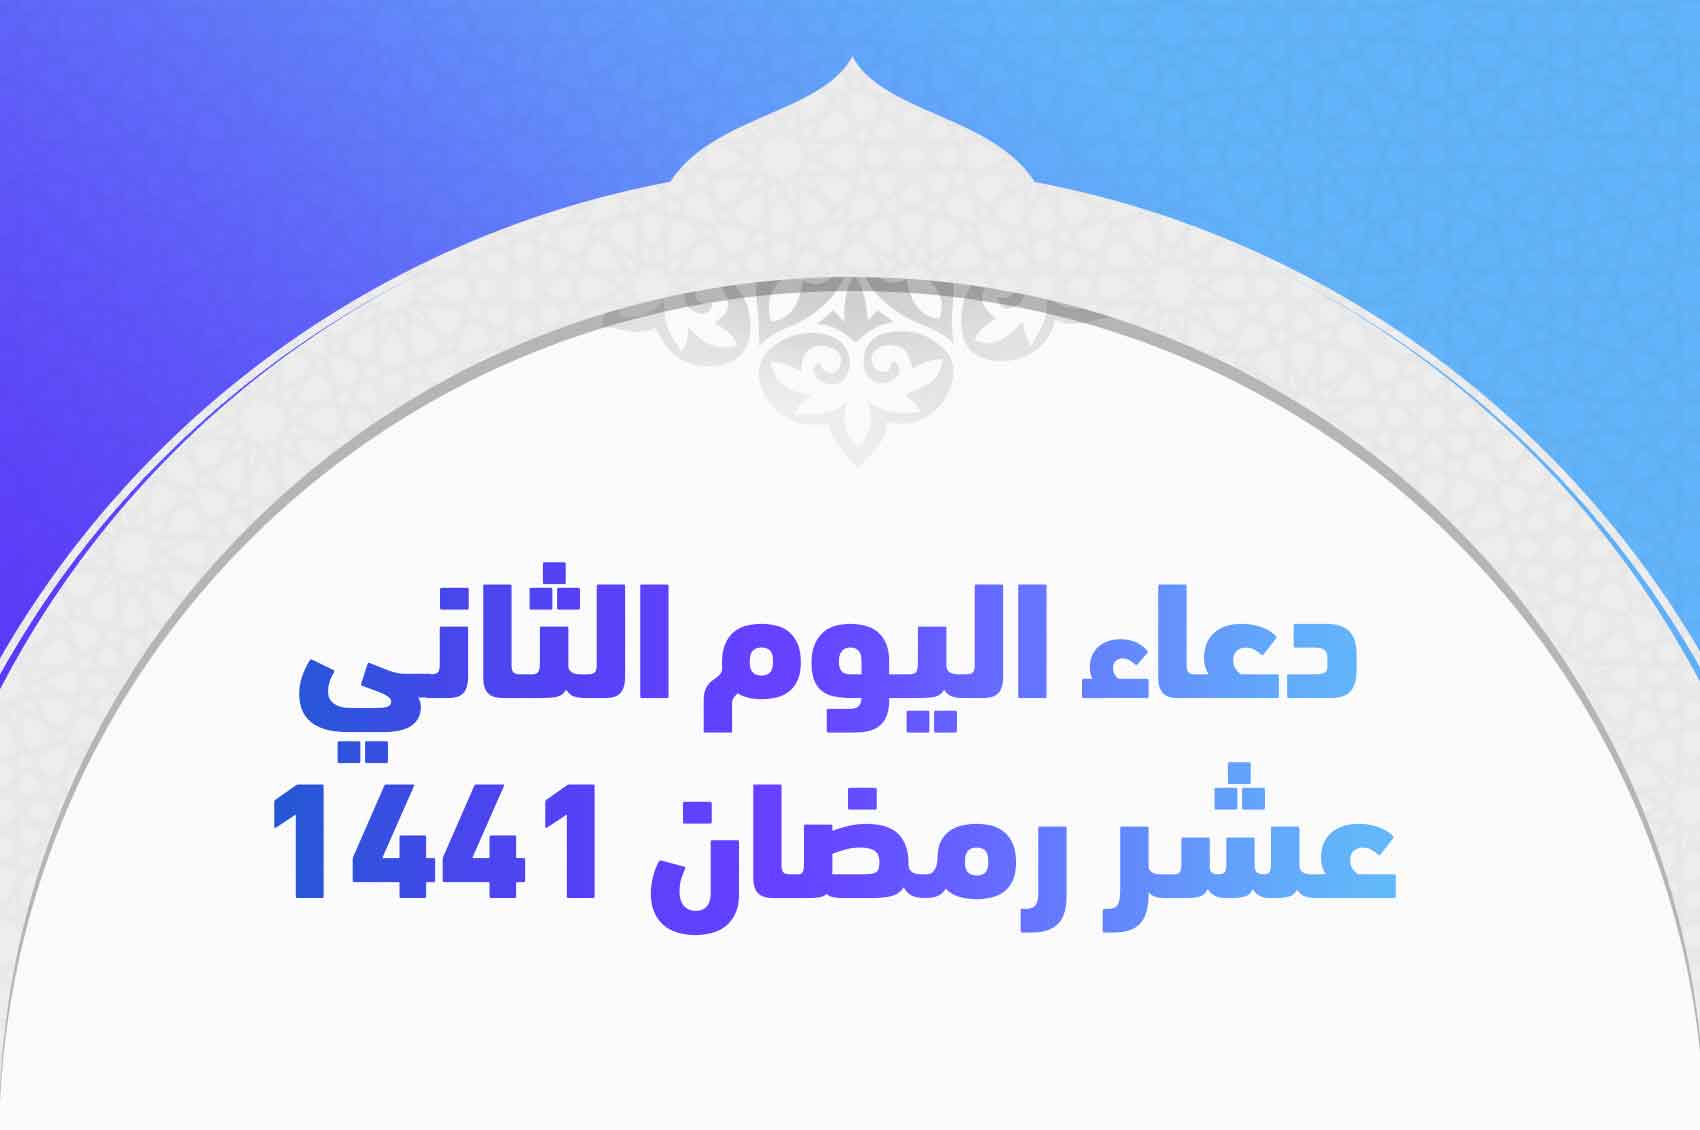 دعاء اليوم الثاني عشر رمضان 1441